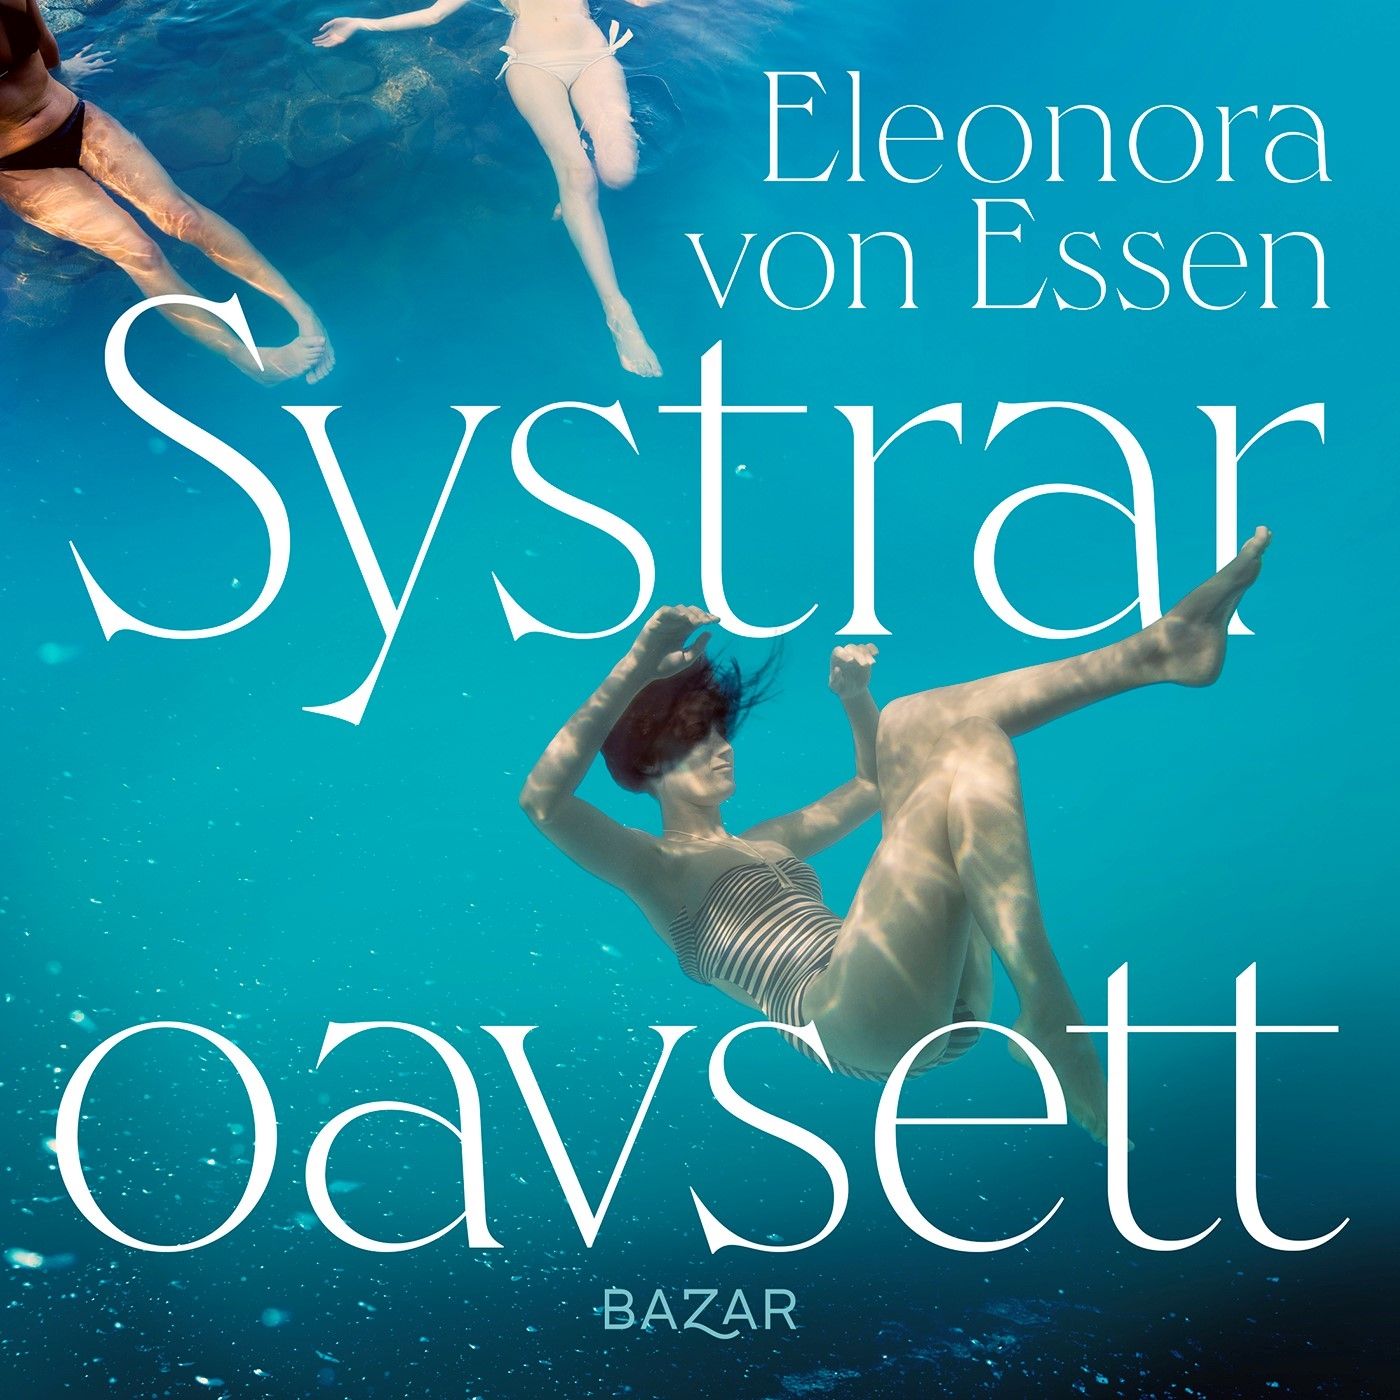 Systrar oavsett, ljudbok av Eleonora von Essen